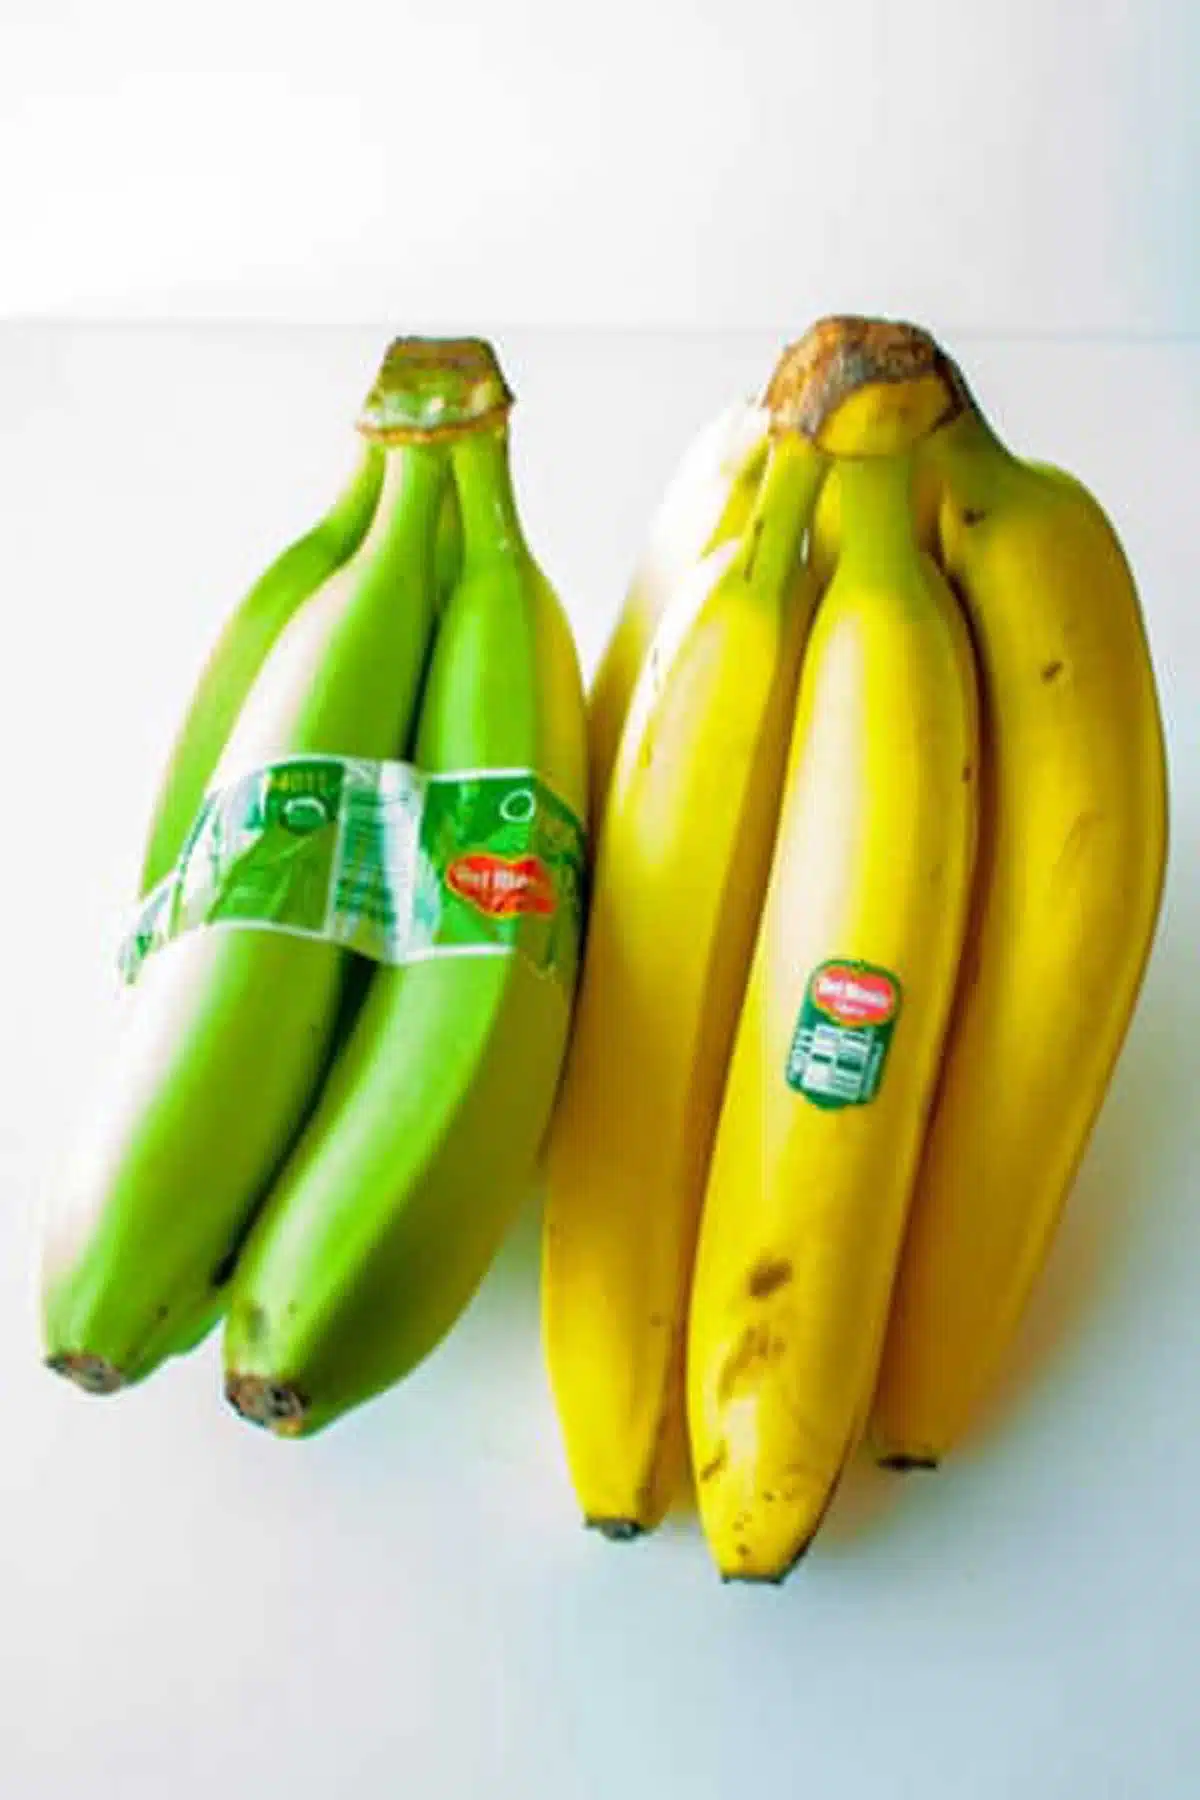 Tall image showing banana bundles.